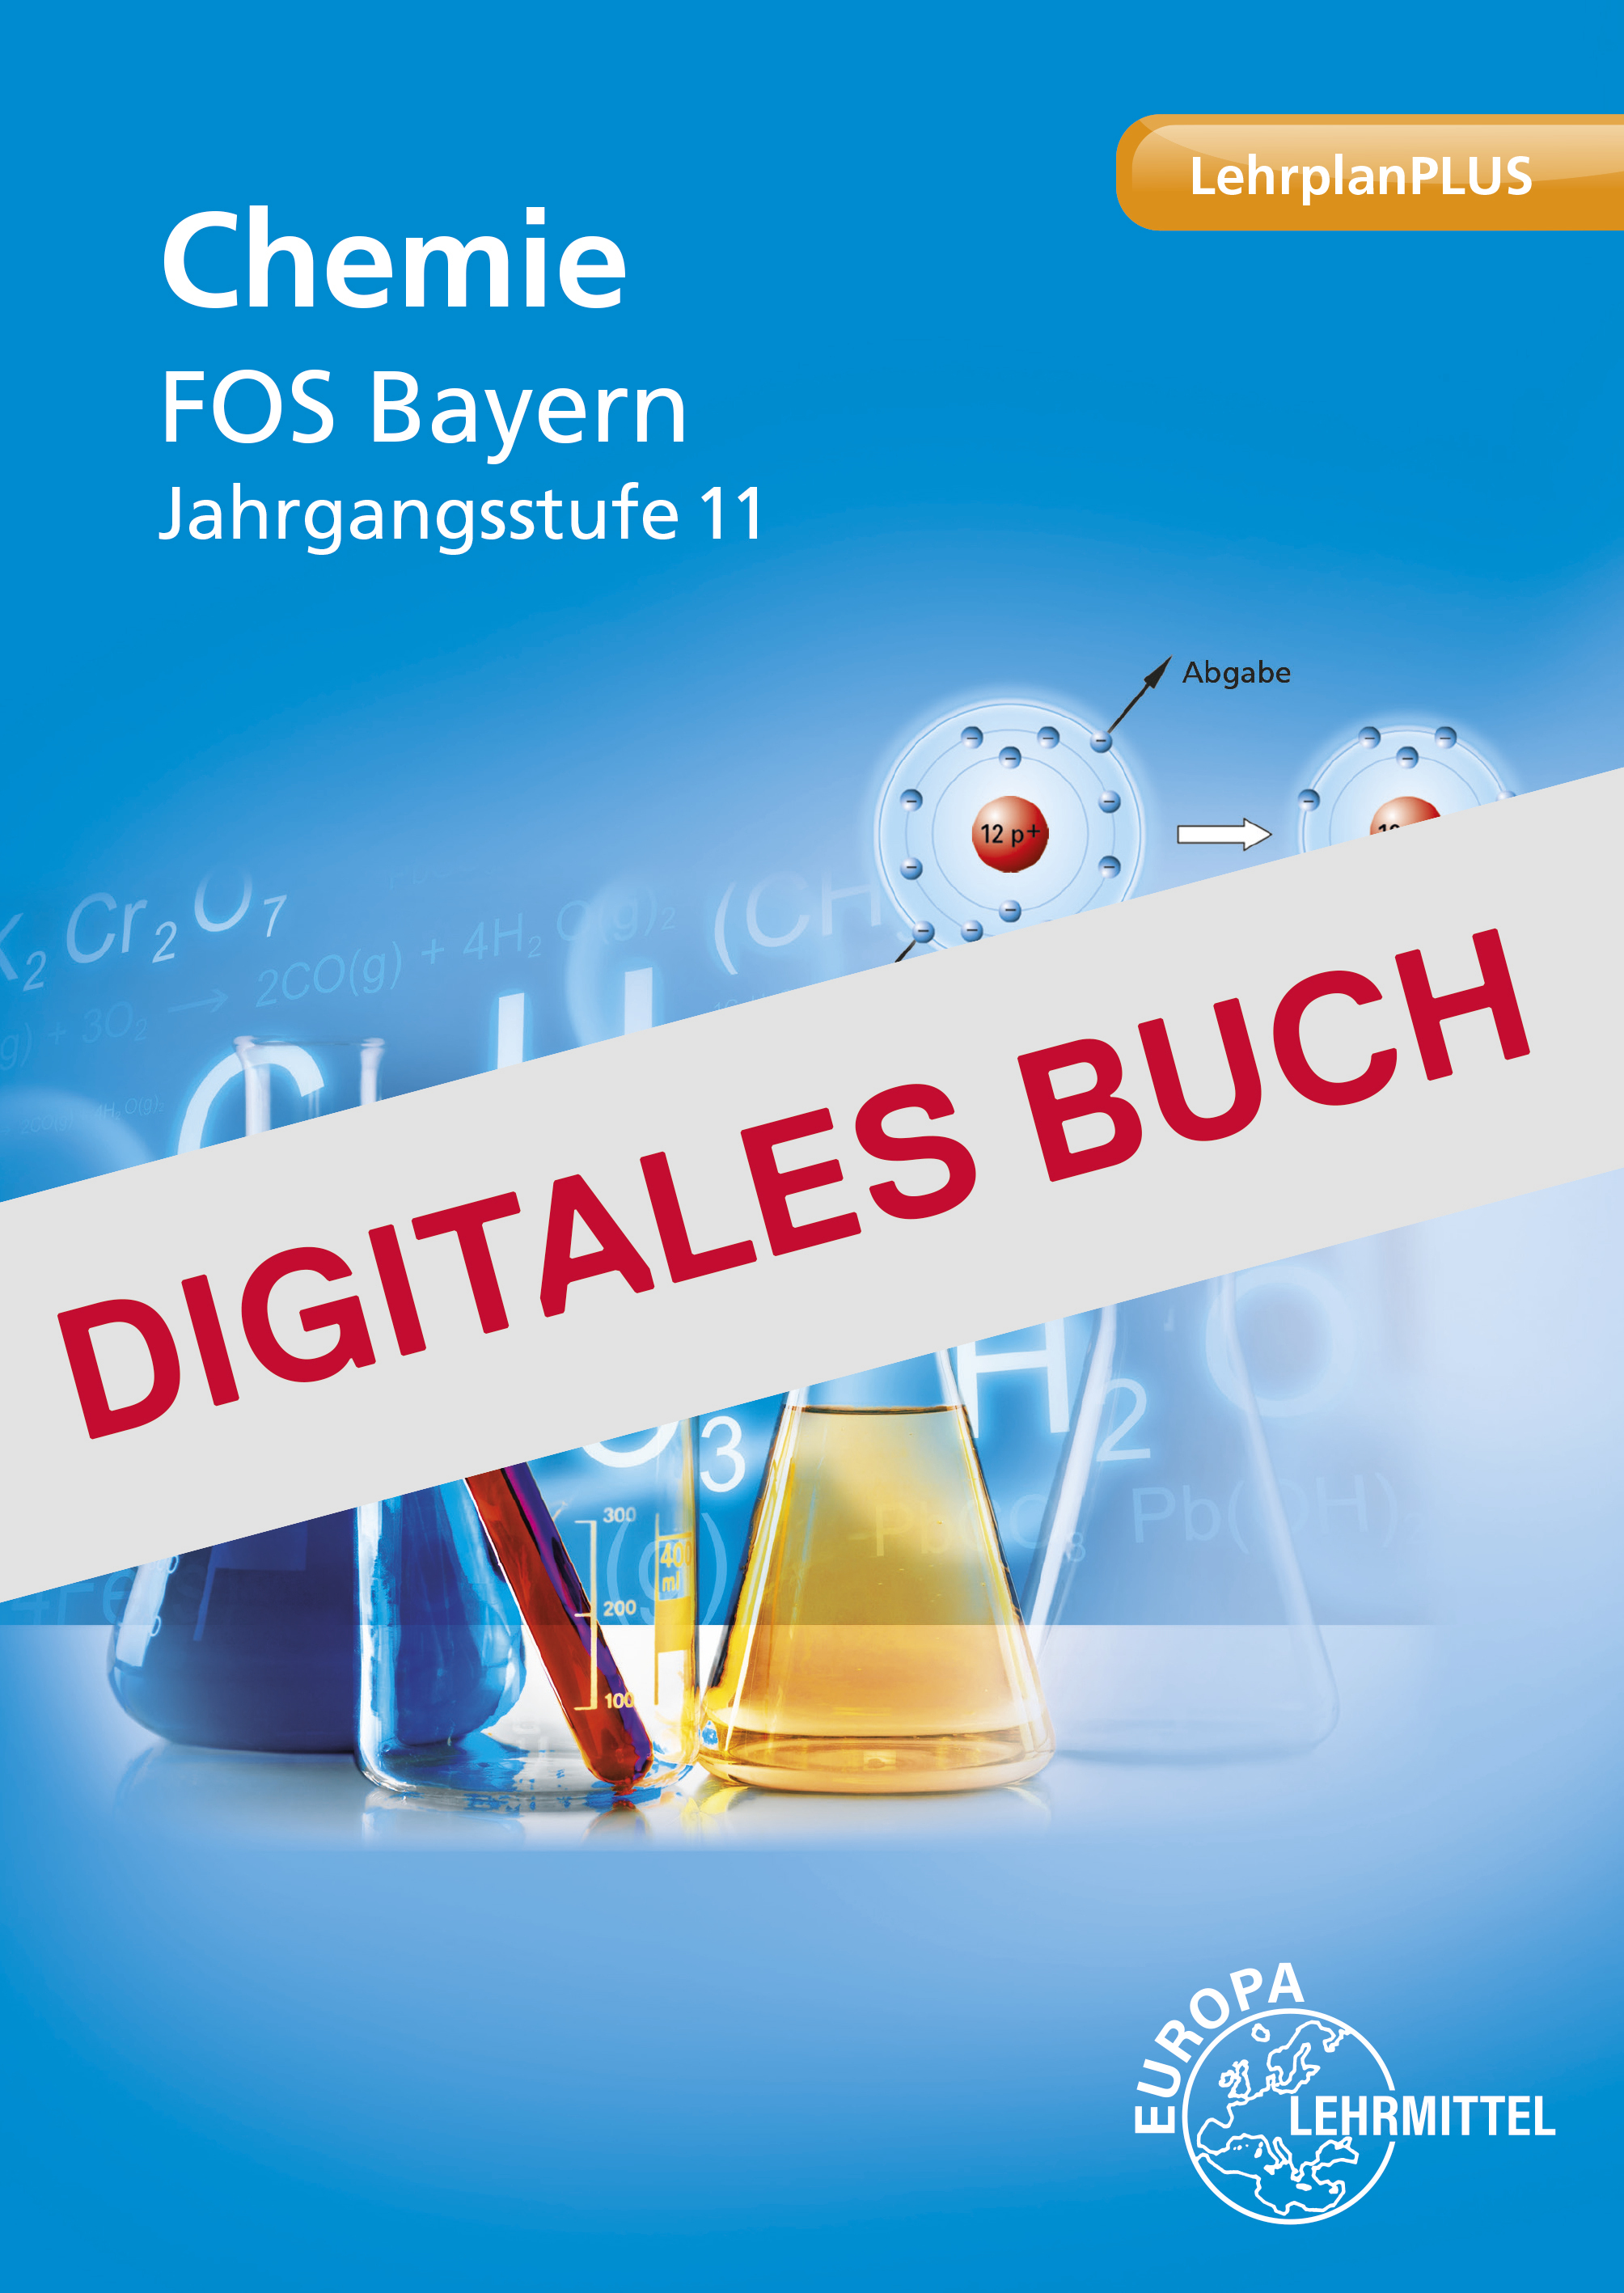 Chemie FOS Bayern Jahrgangsstufe 11 - Digitales Buch